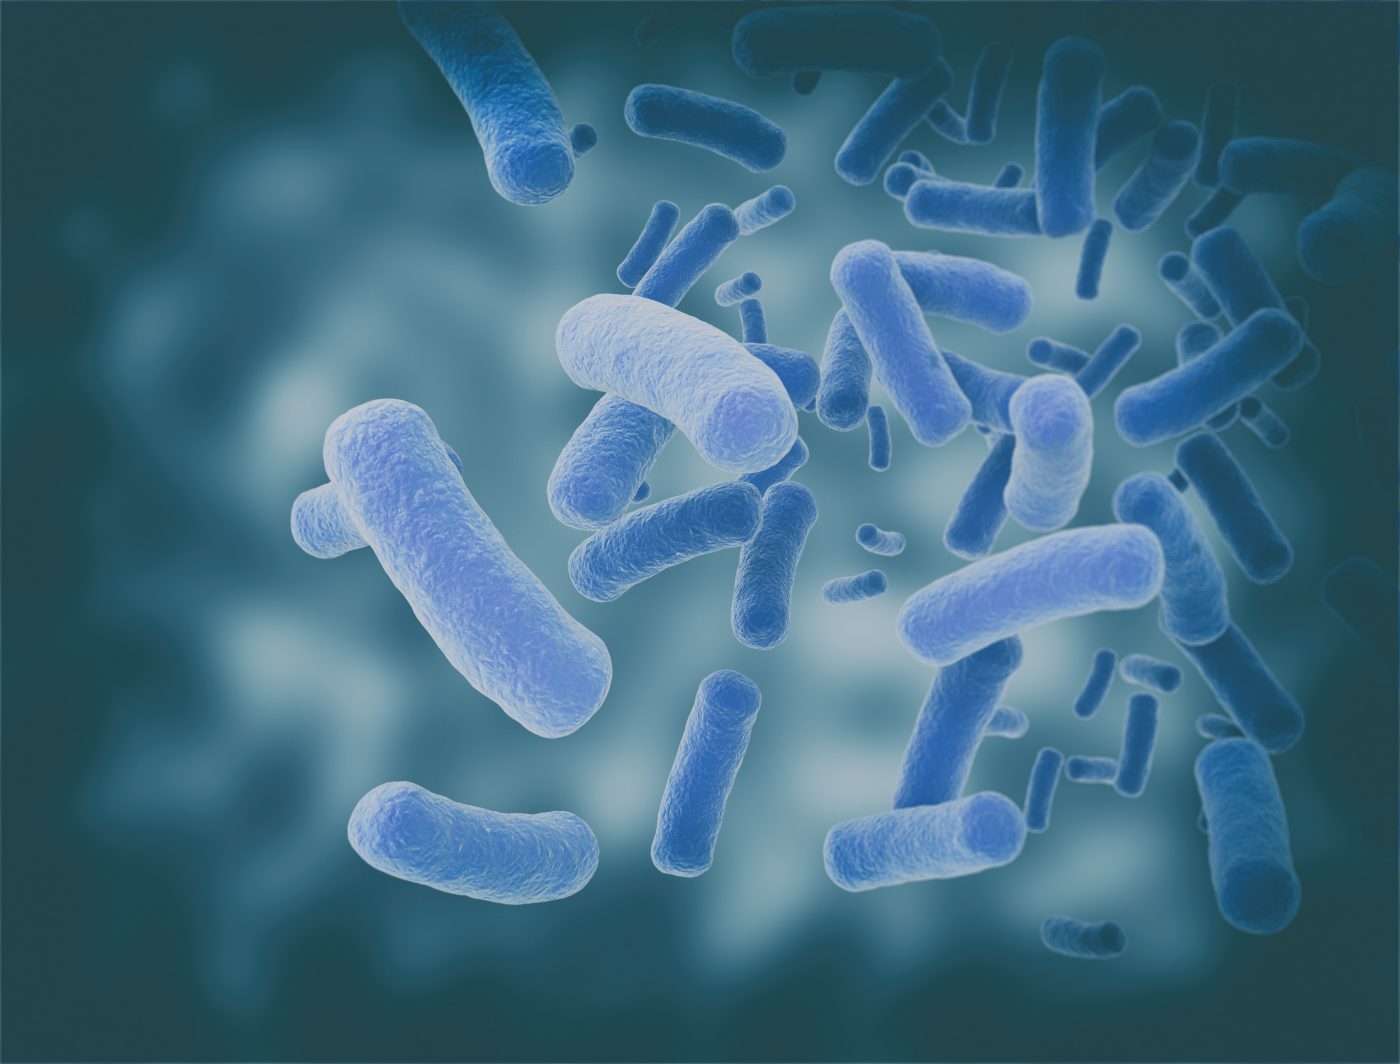 gut bacteria composition